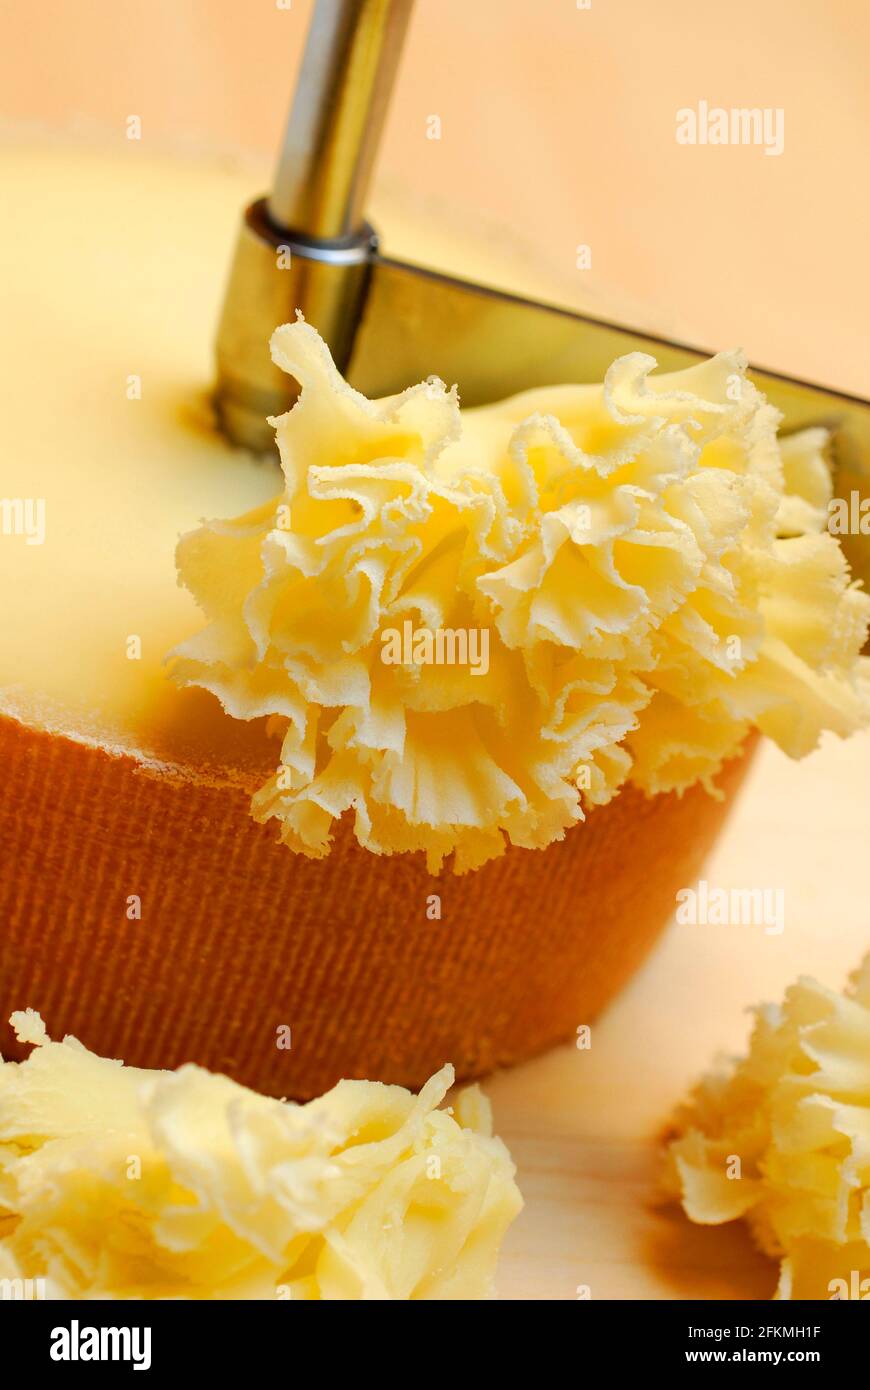 Tête de Moine – Smelly Cheese Co.